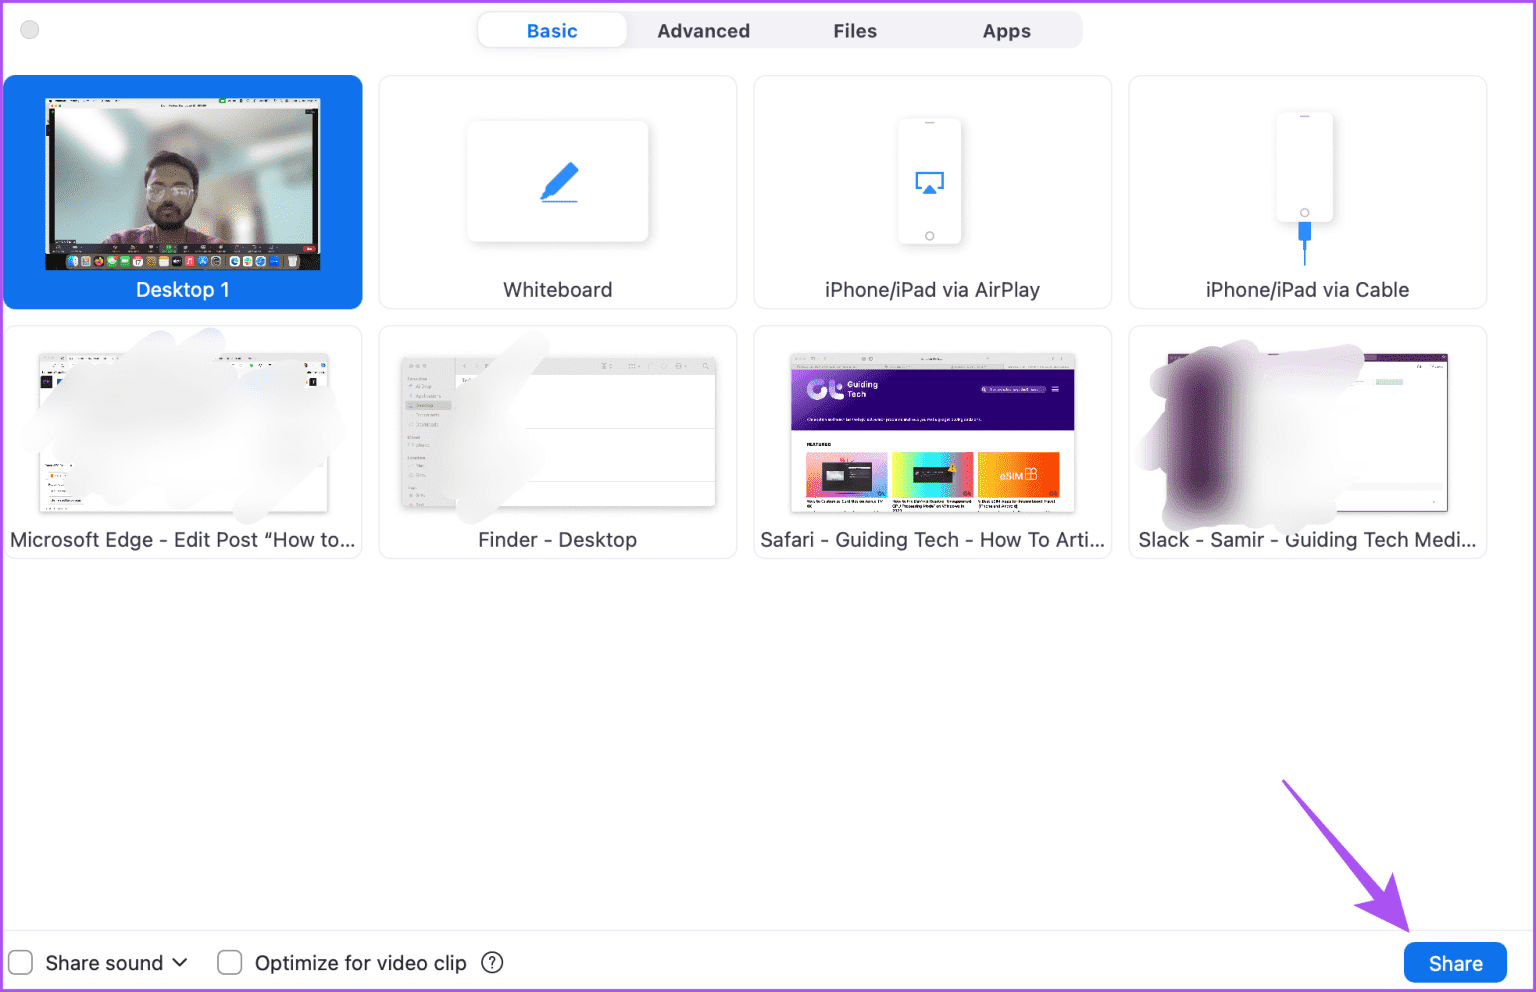 كيفية استخدام Presenter Overlay على Mac - %categories